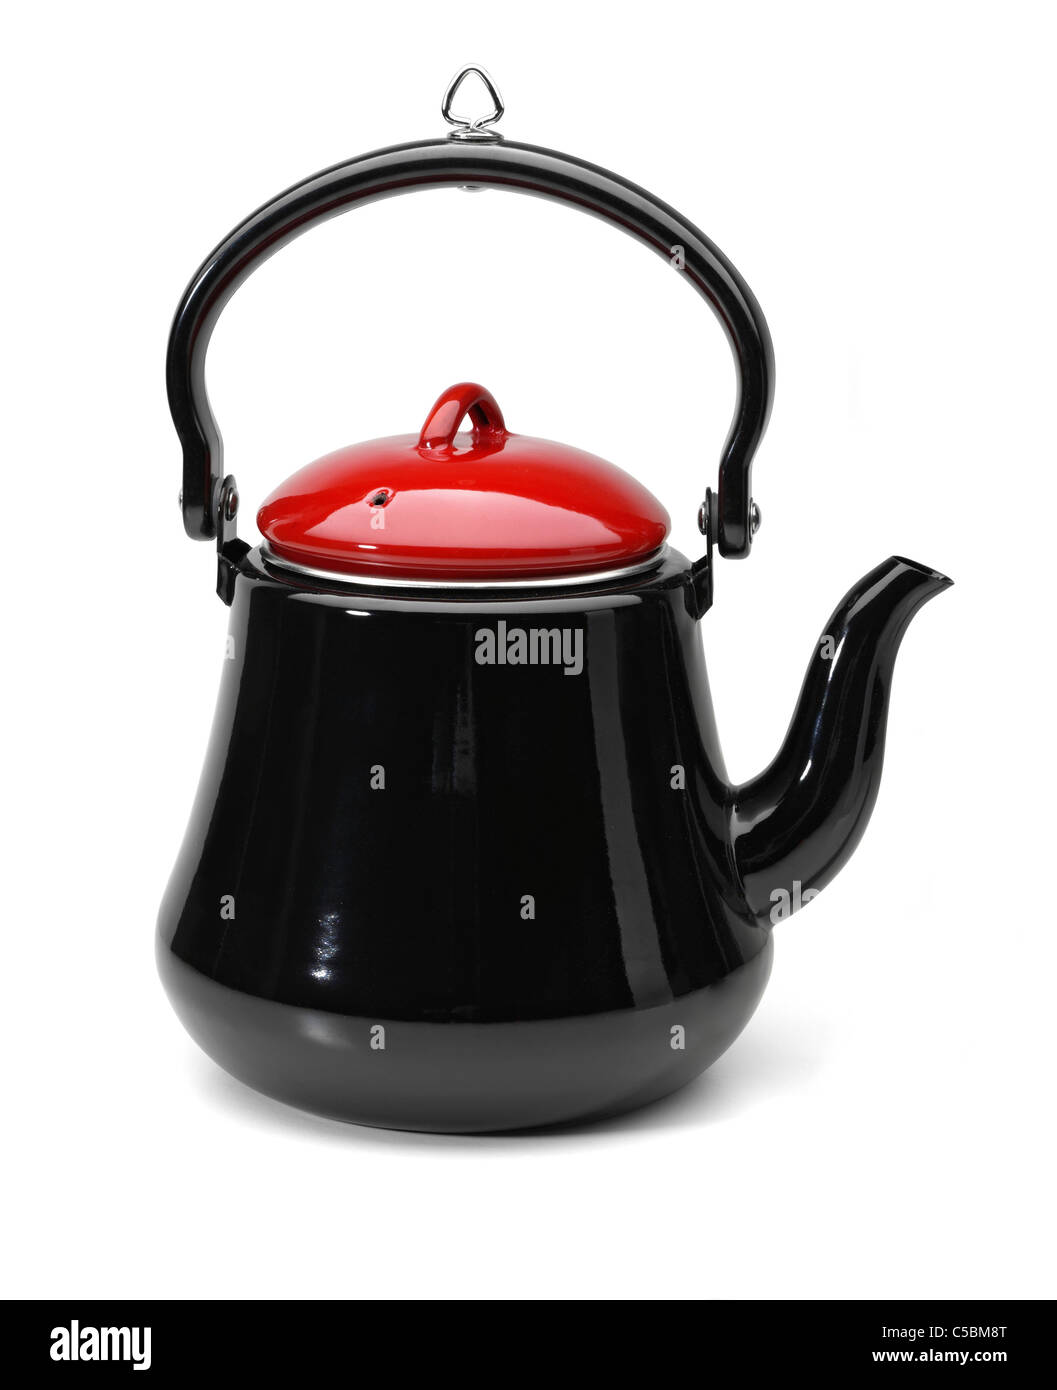 https://c8.alamy.com/comp/C5BM8T/enamel-kettle-for-use-on-stove-or-open-fire-C5BM8T.jpg